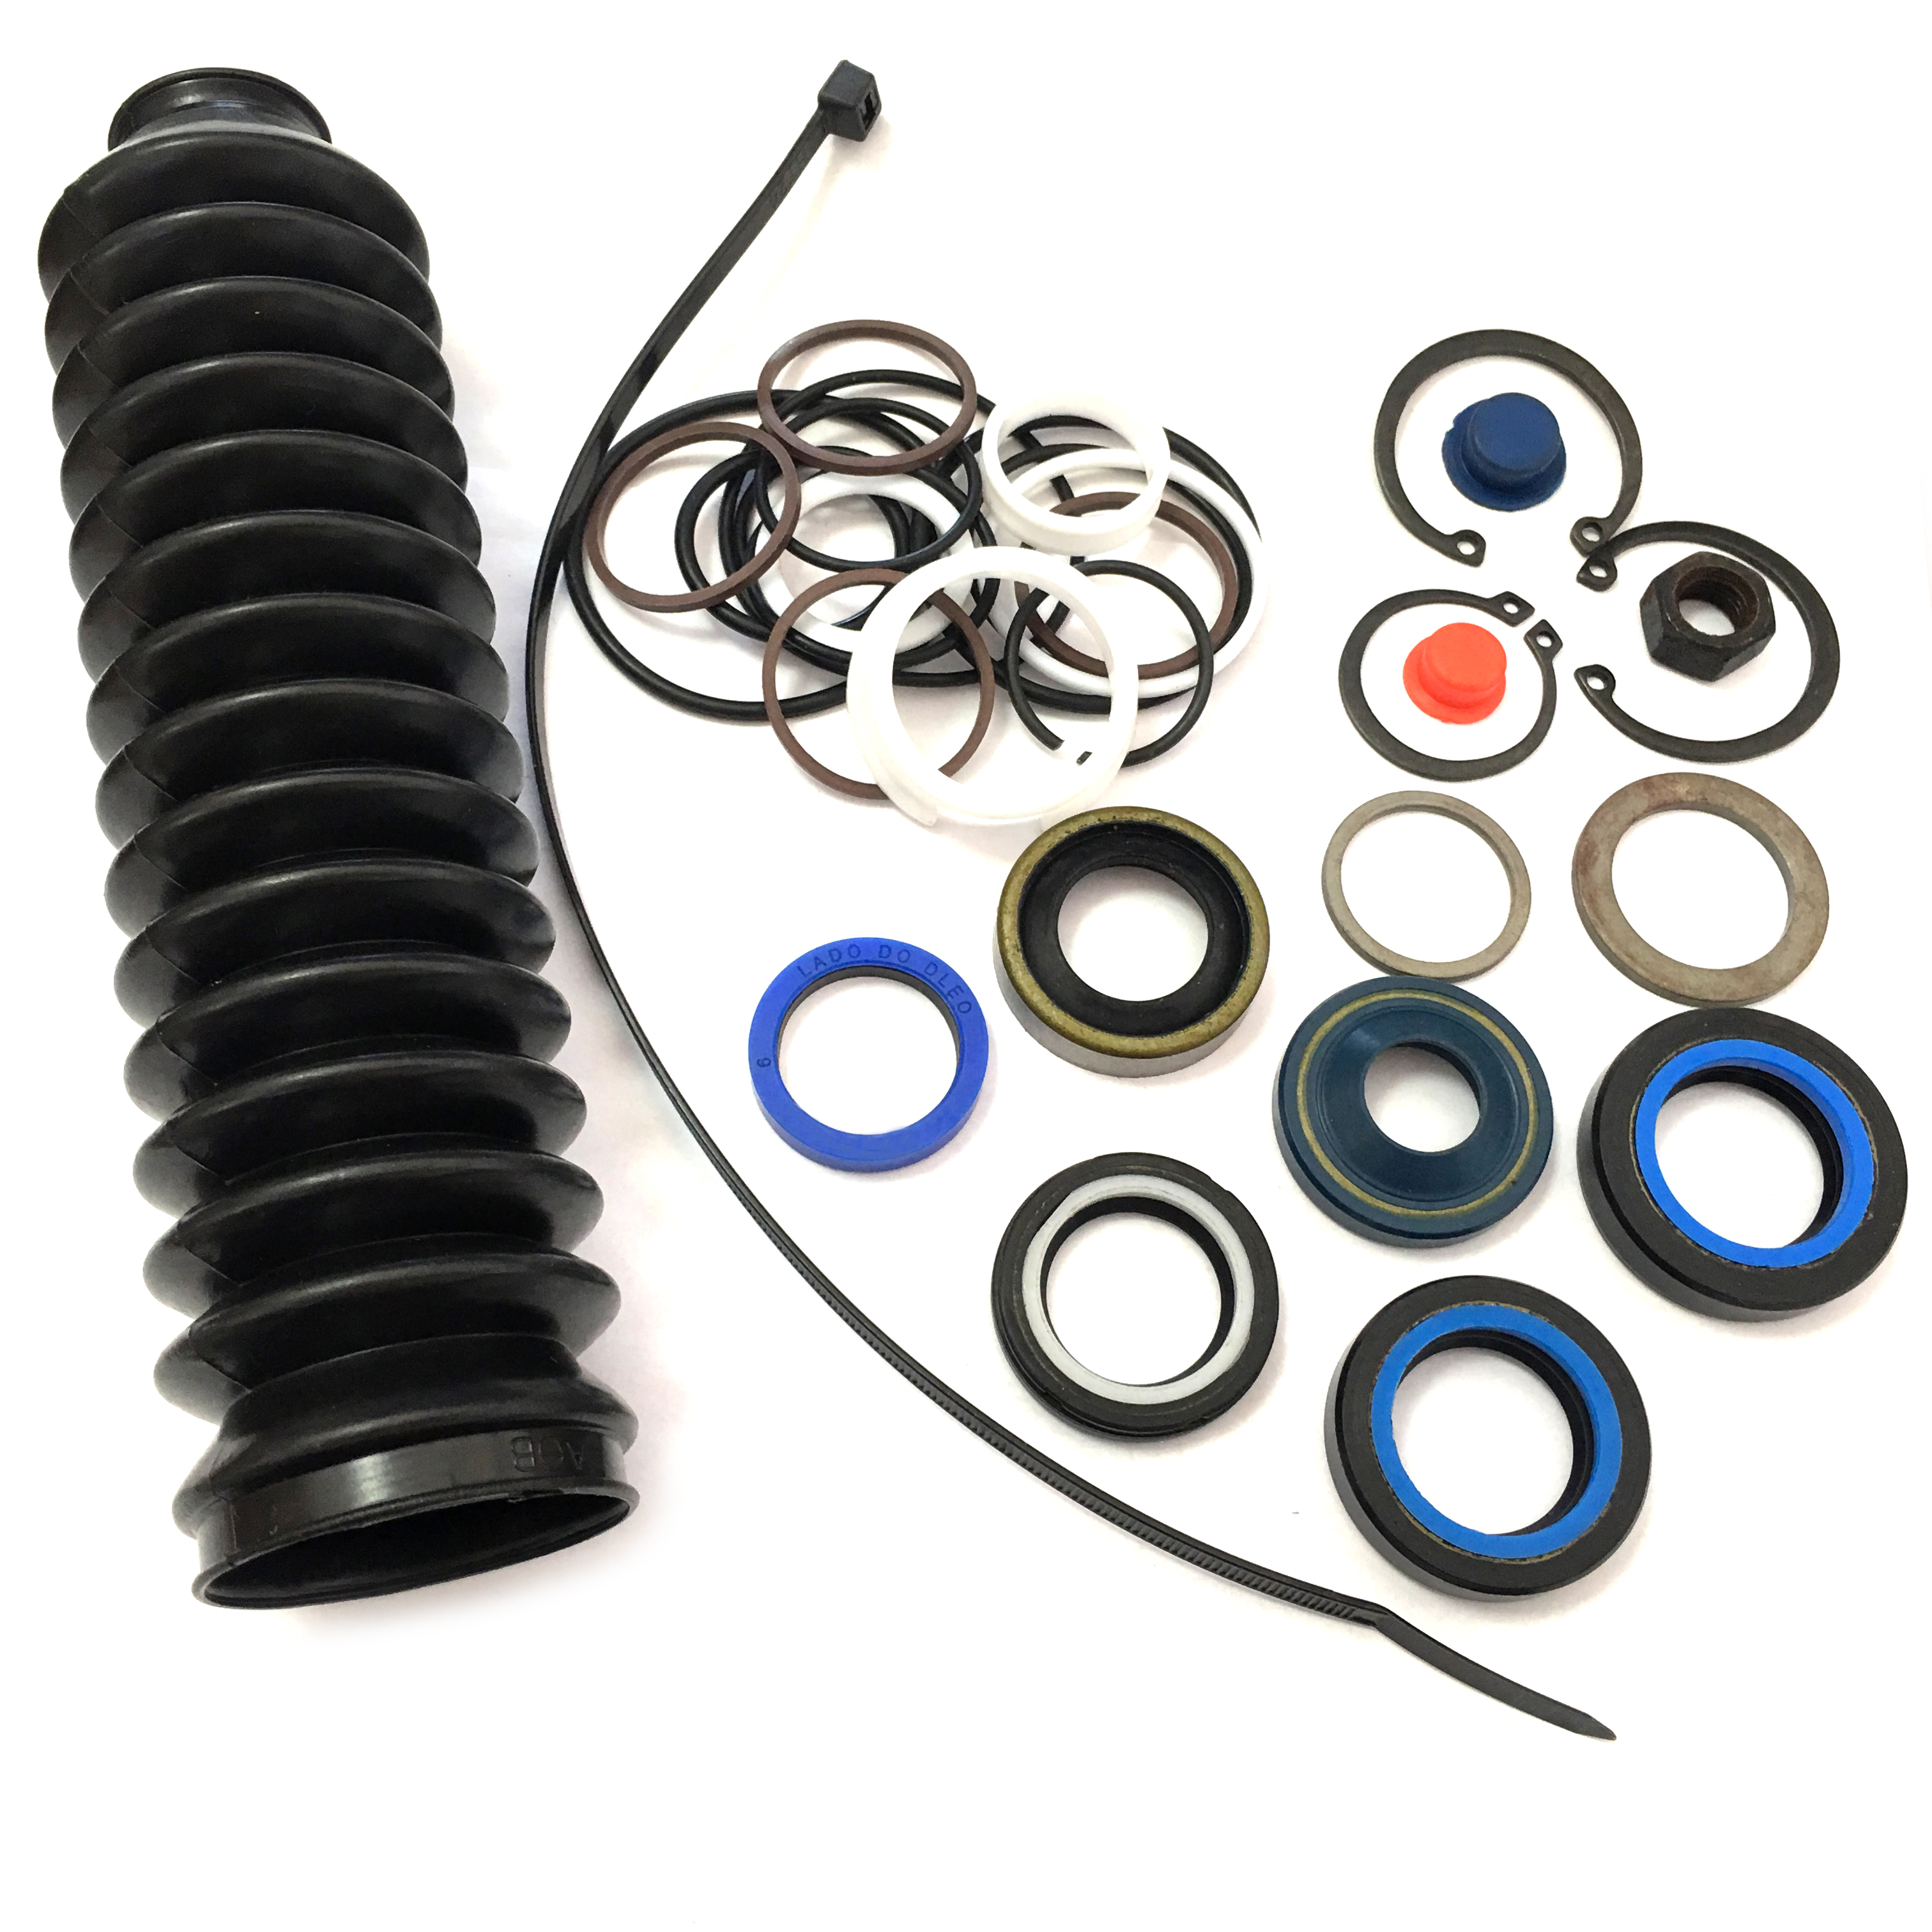 08001-94111 Power Steering Repair kits